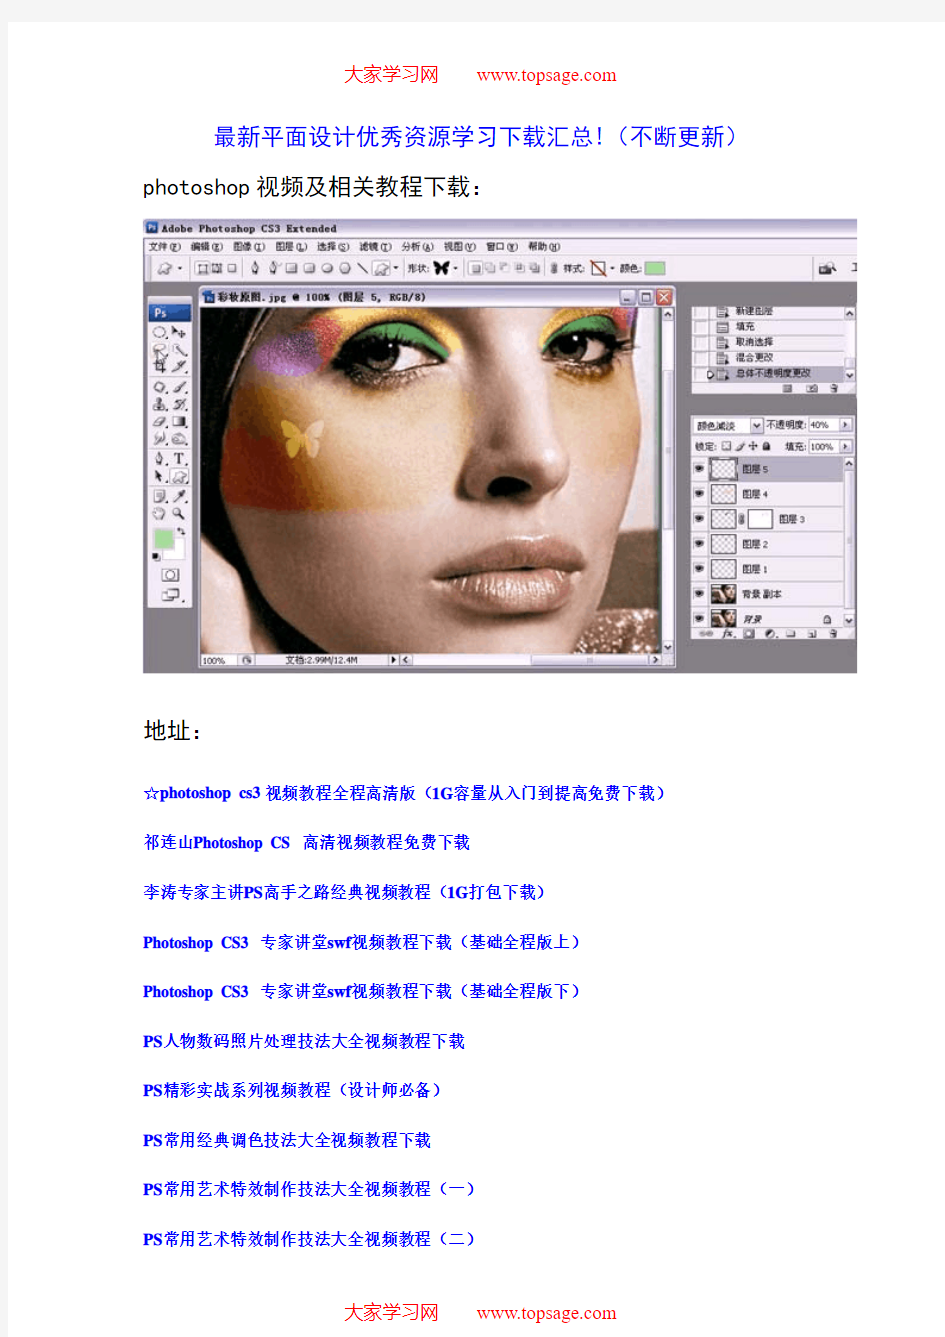 Photoshop_CS4学习教程完整版